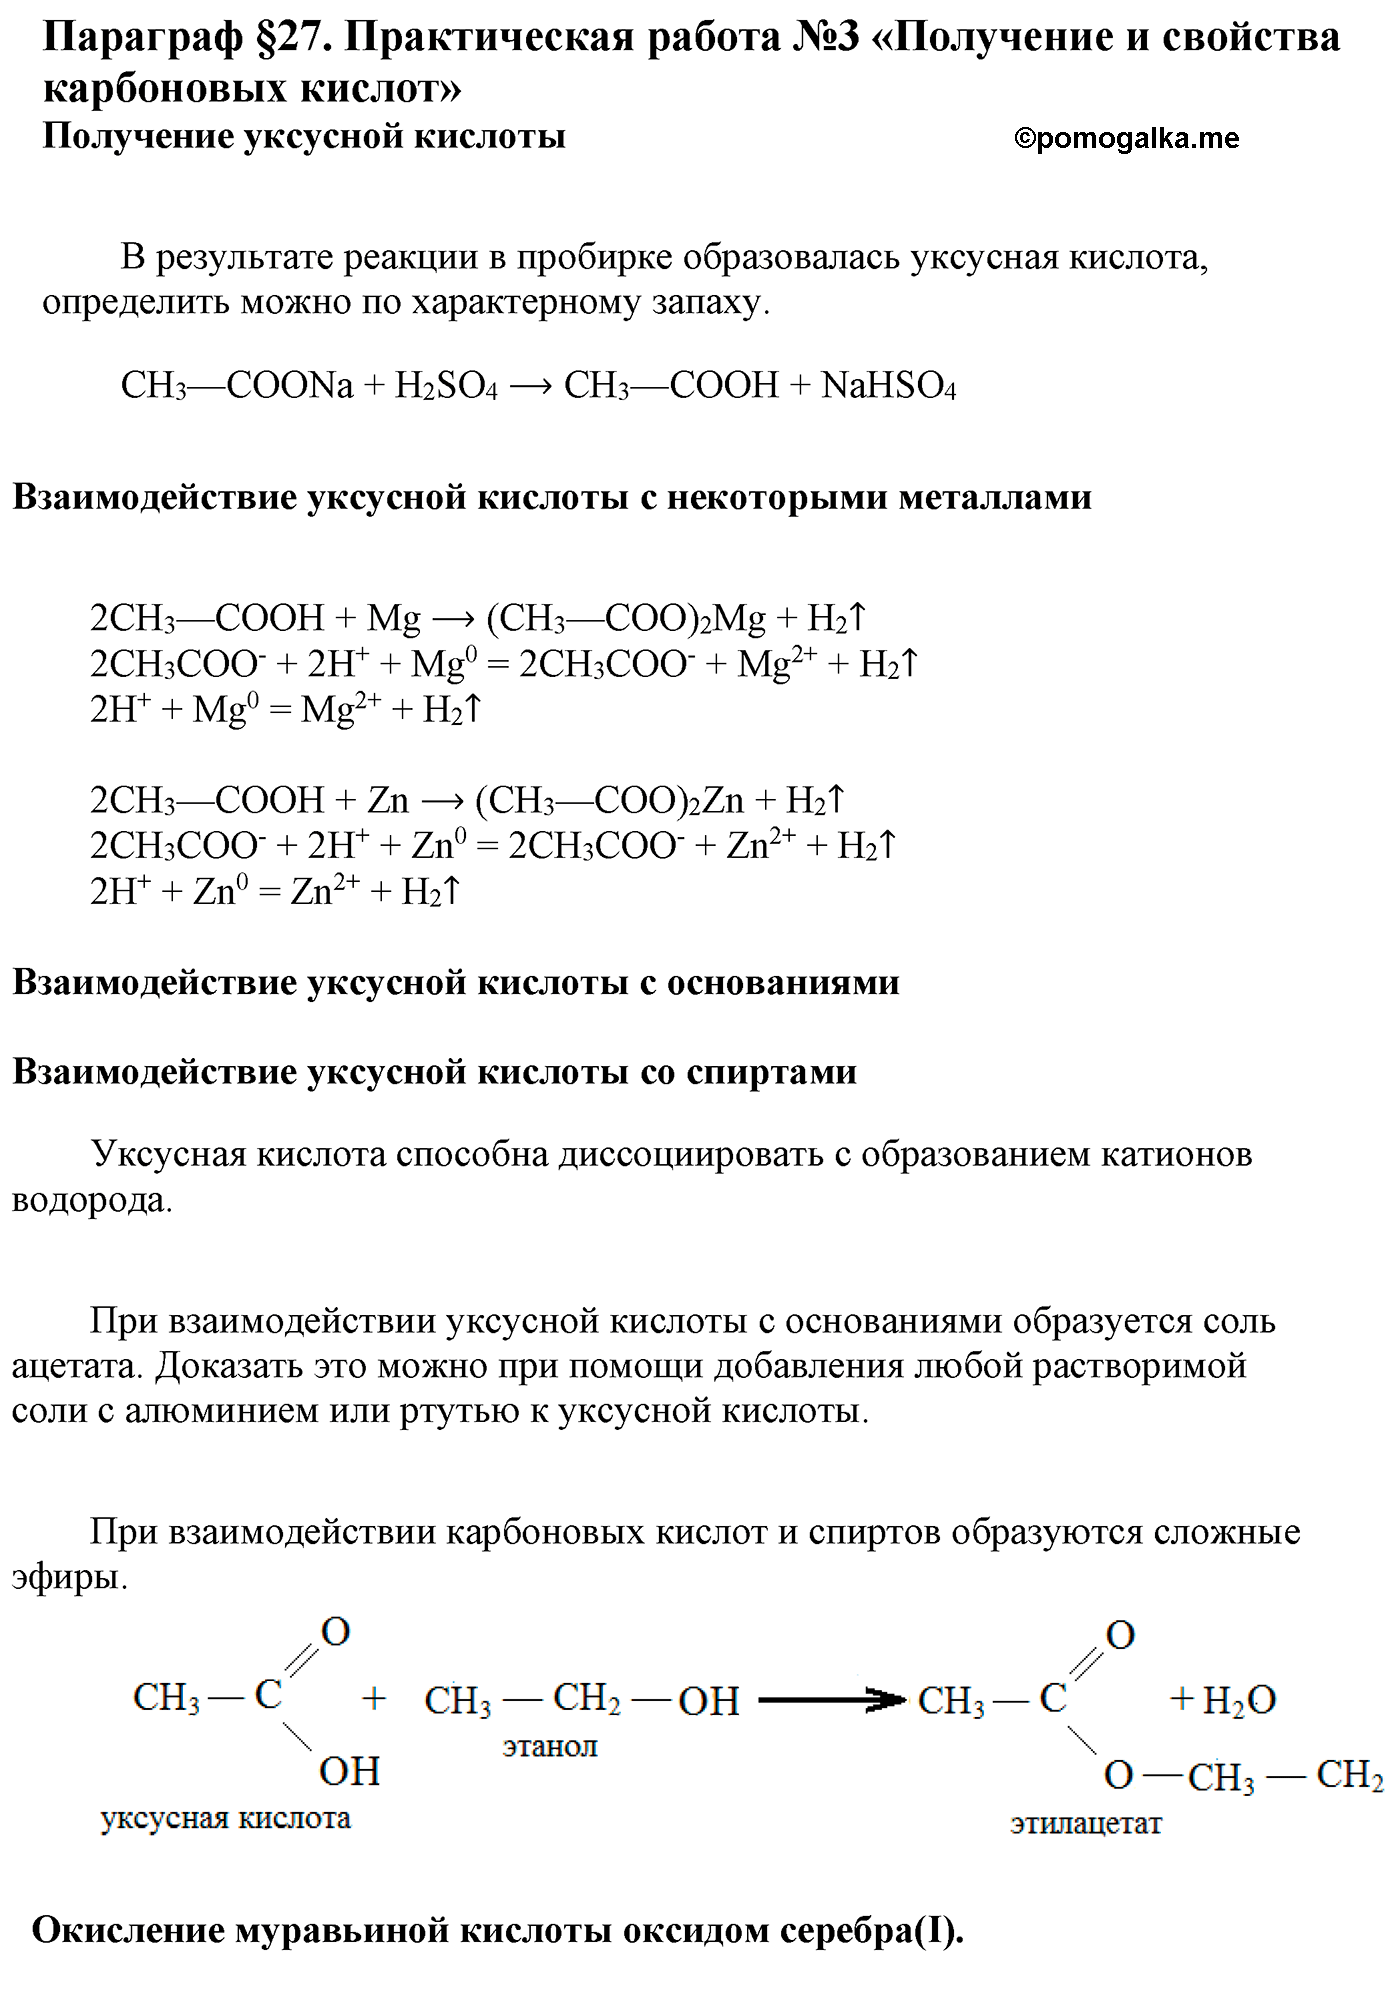 Параграф 27 практическая работа №3 химия 10 класс Рудзитис